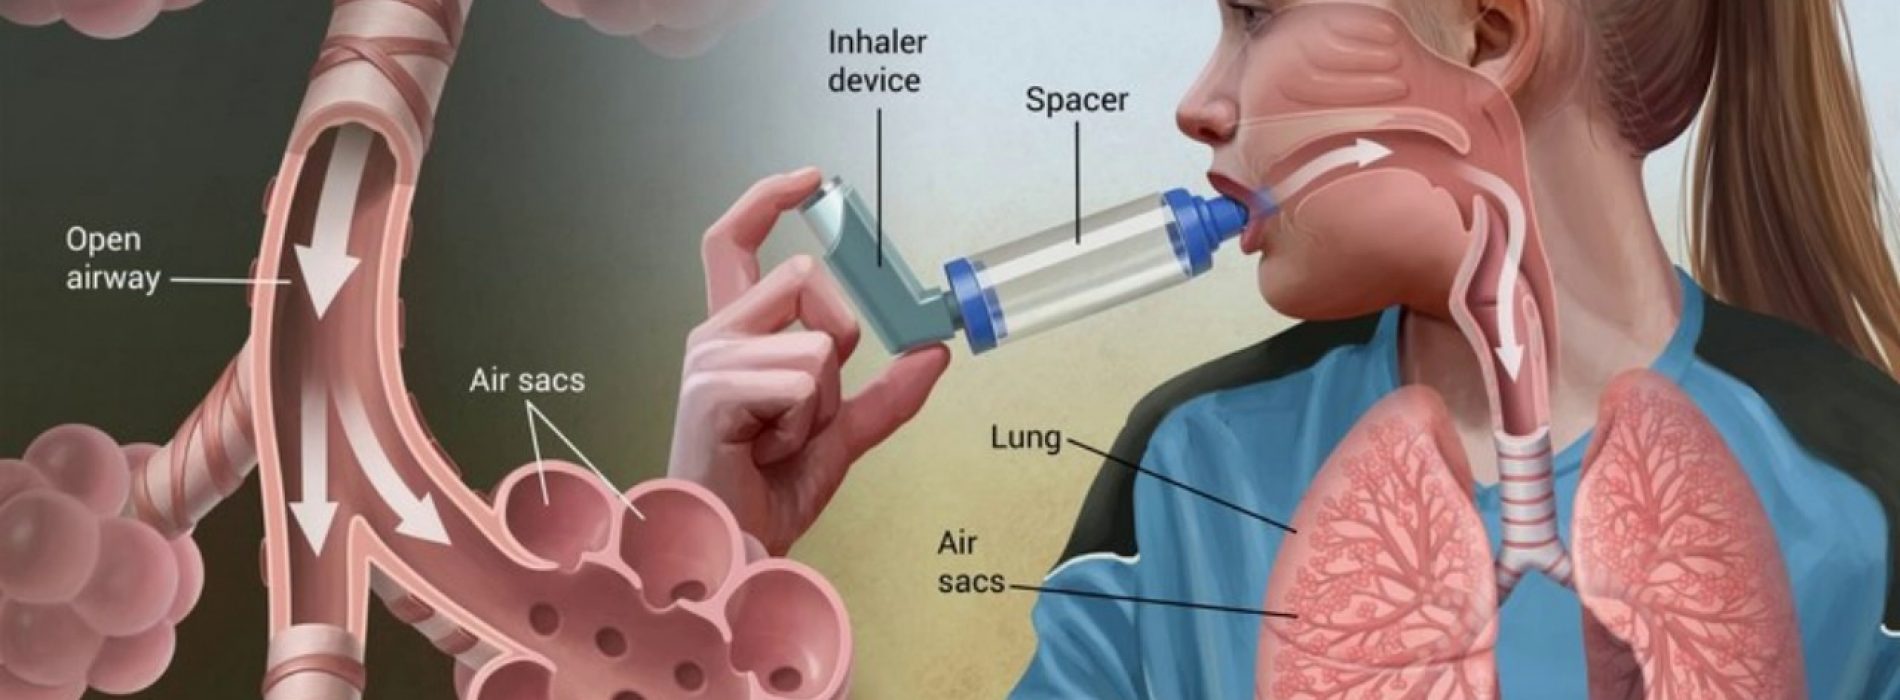 Het ontkrachten van gemeenschappelijke mythen over astma